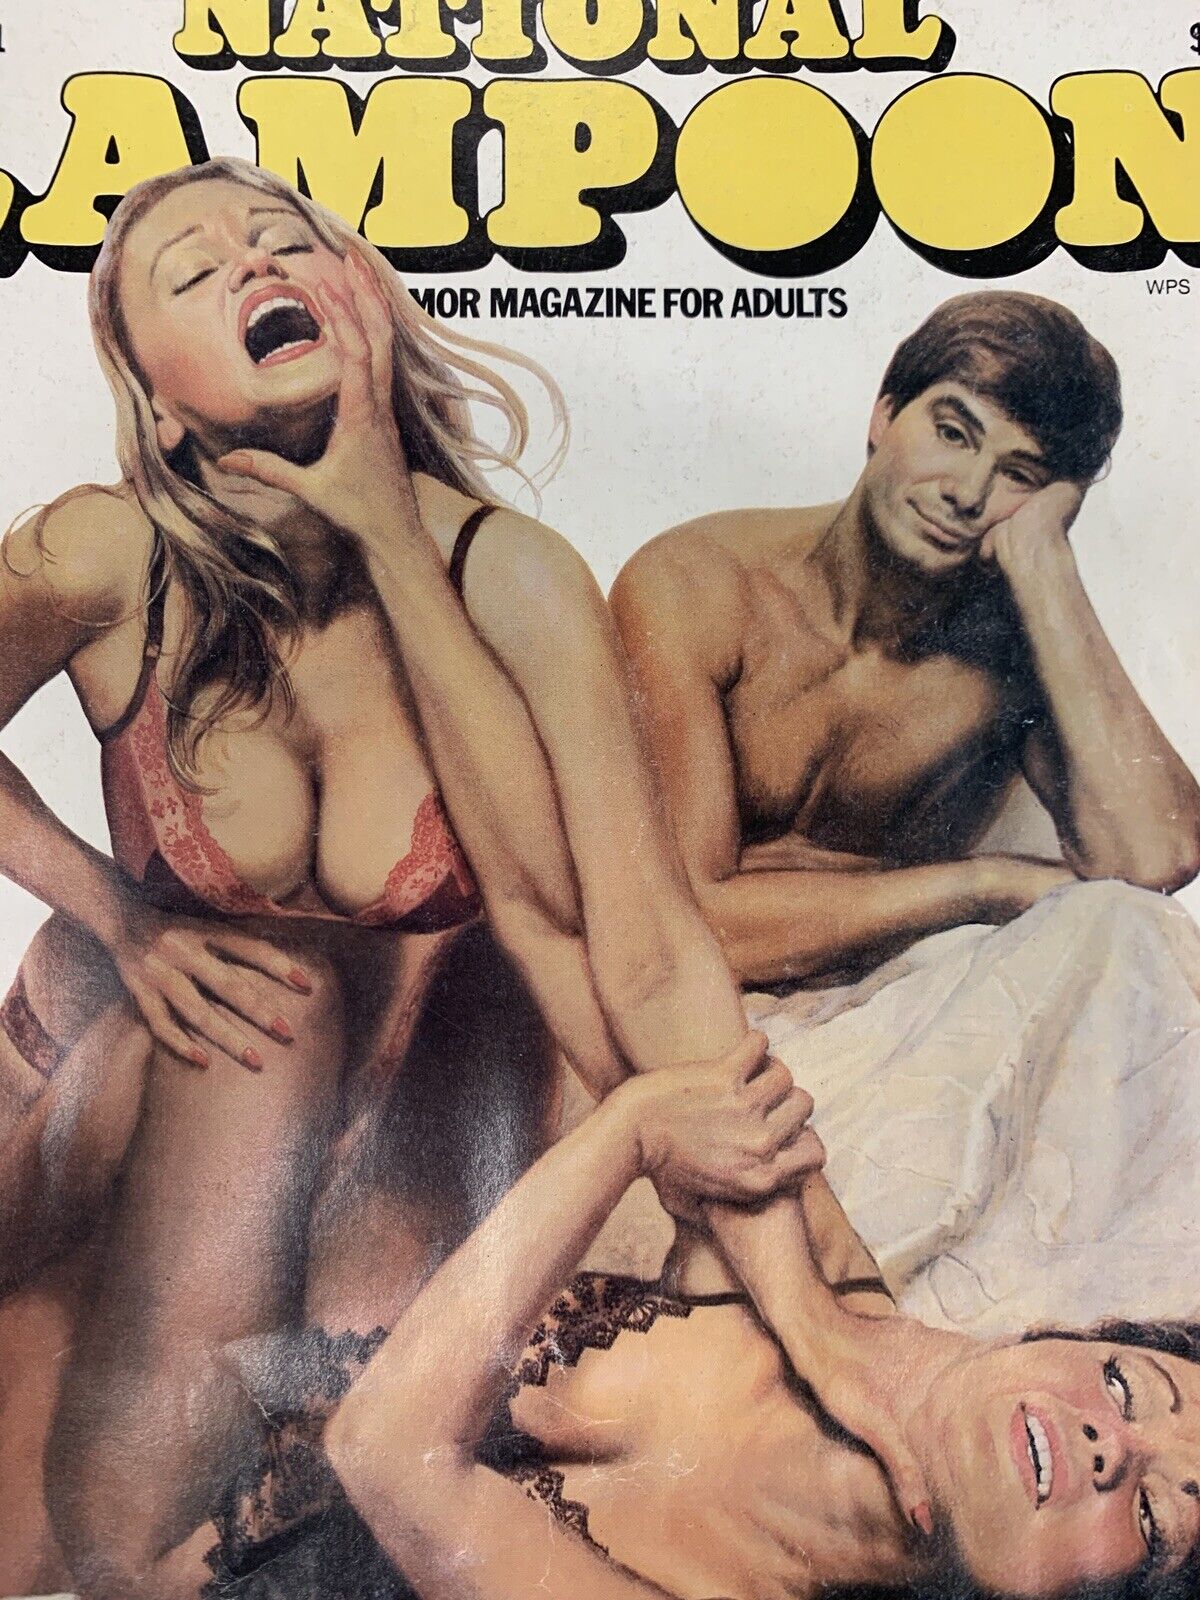 National Lampoon Magazine January 1981 *WATER DAMAGE*